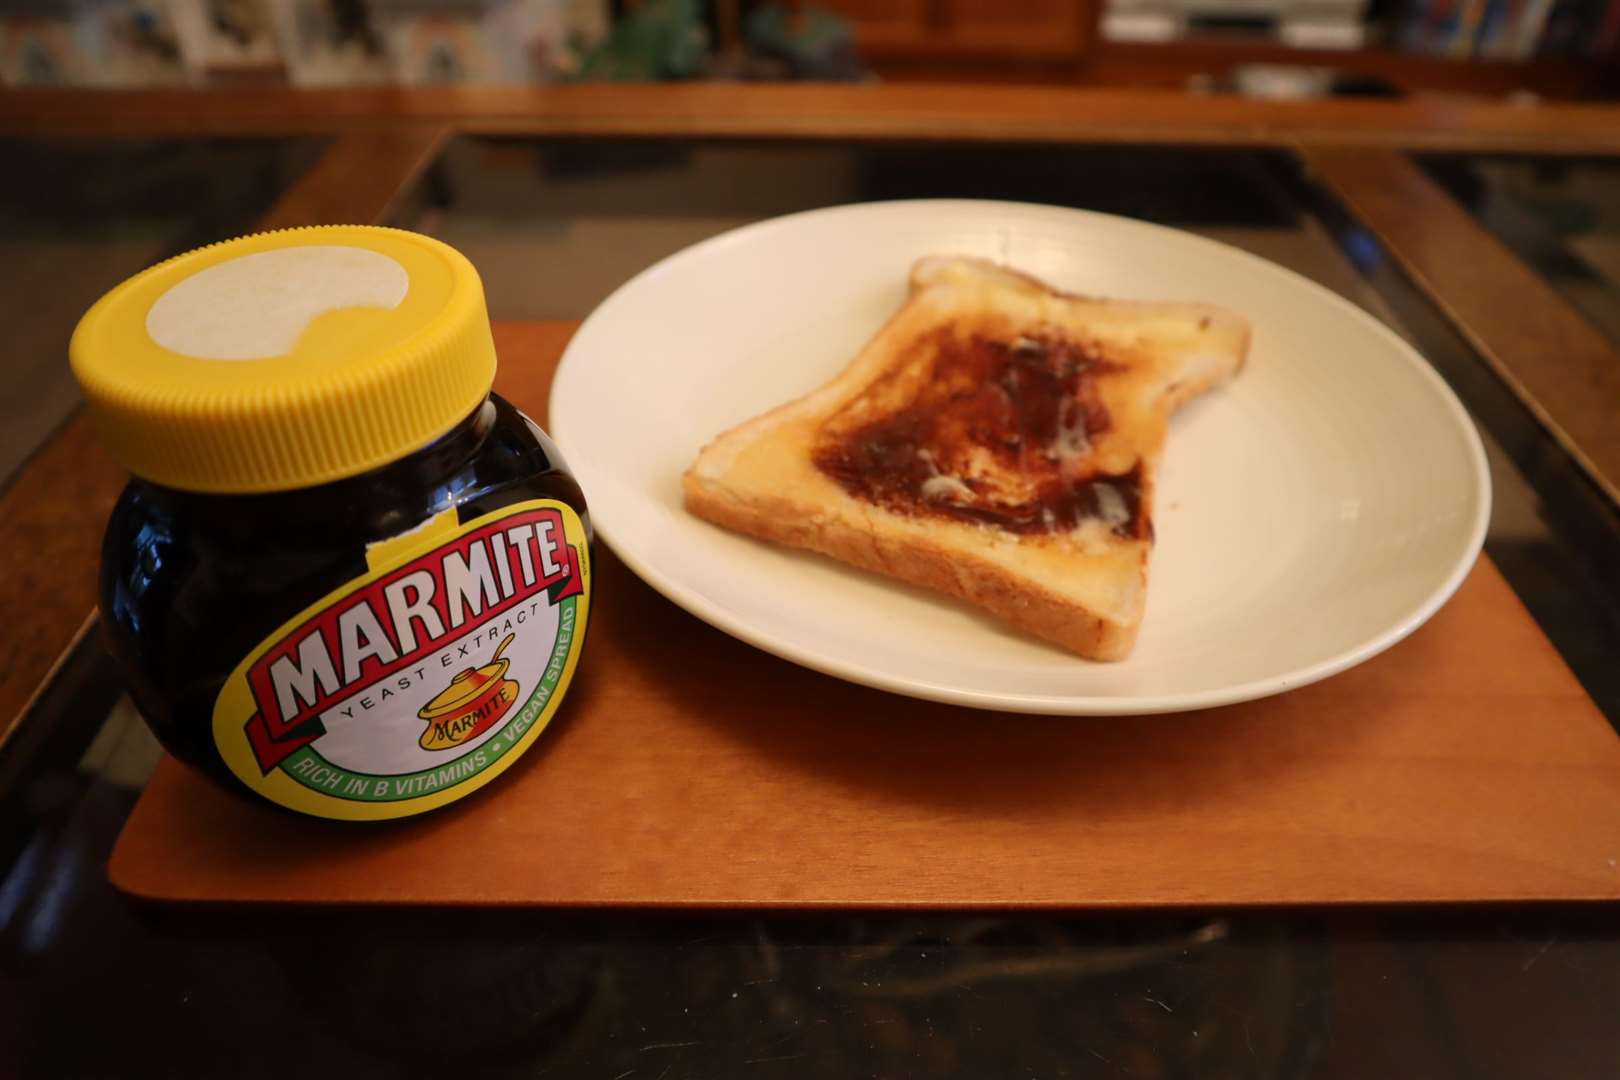 Marmite and toast